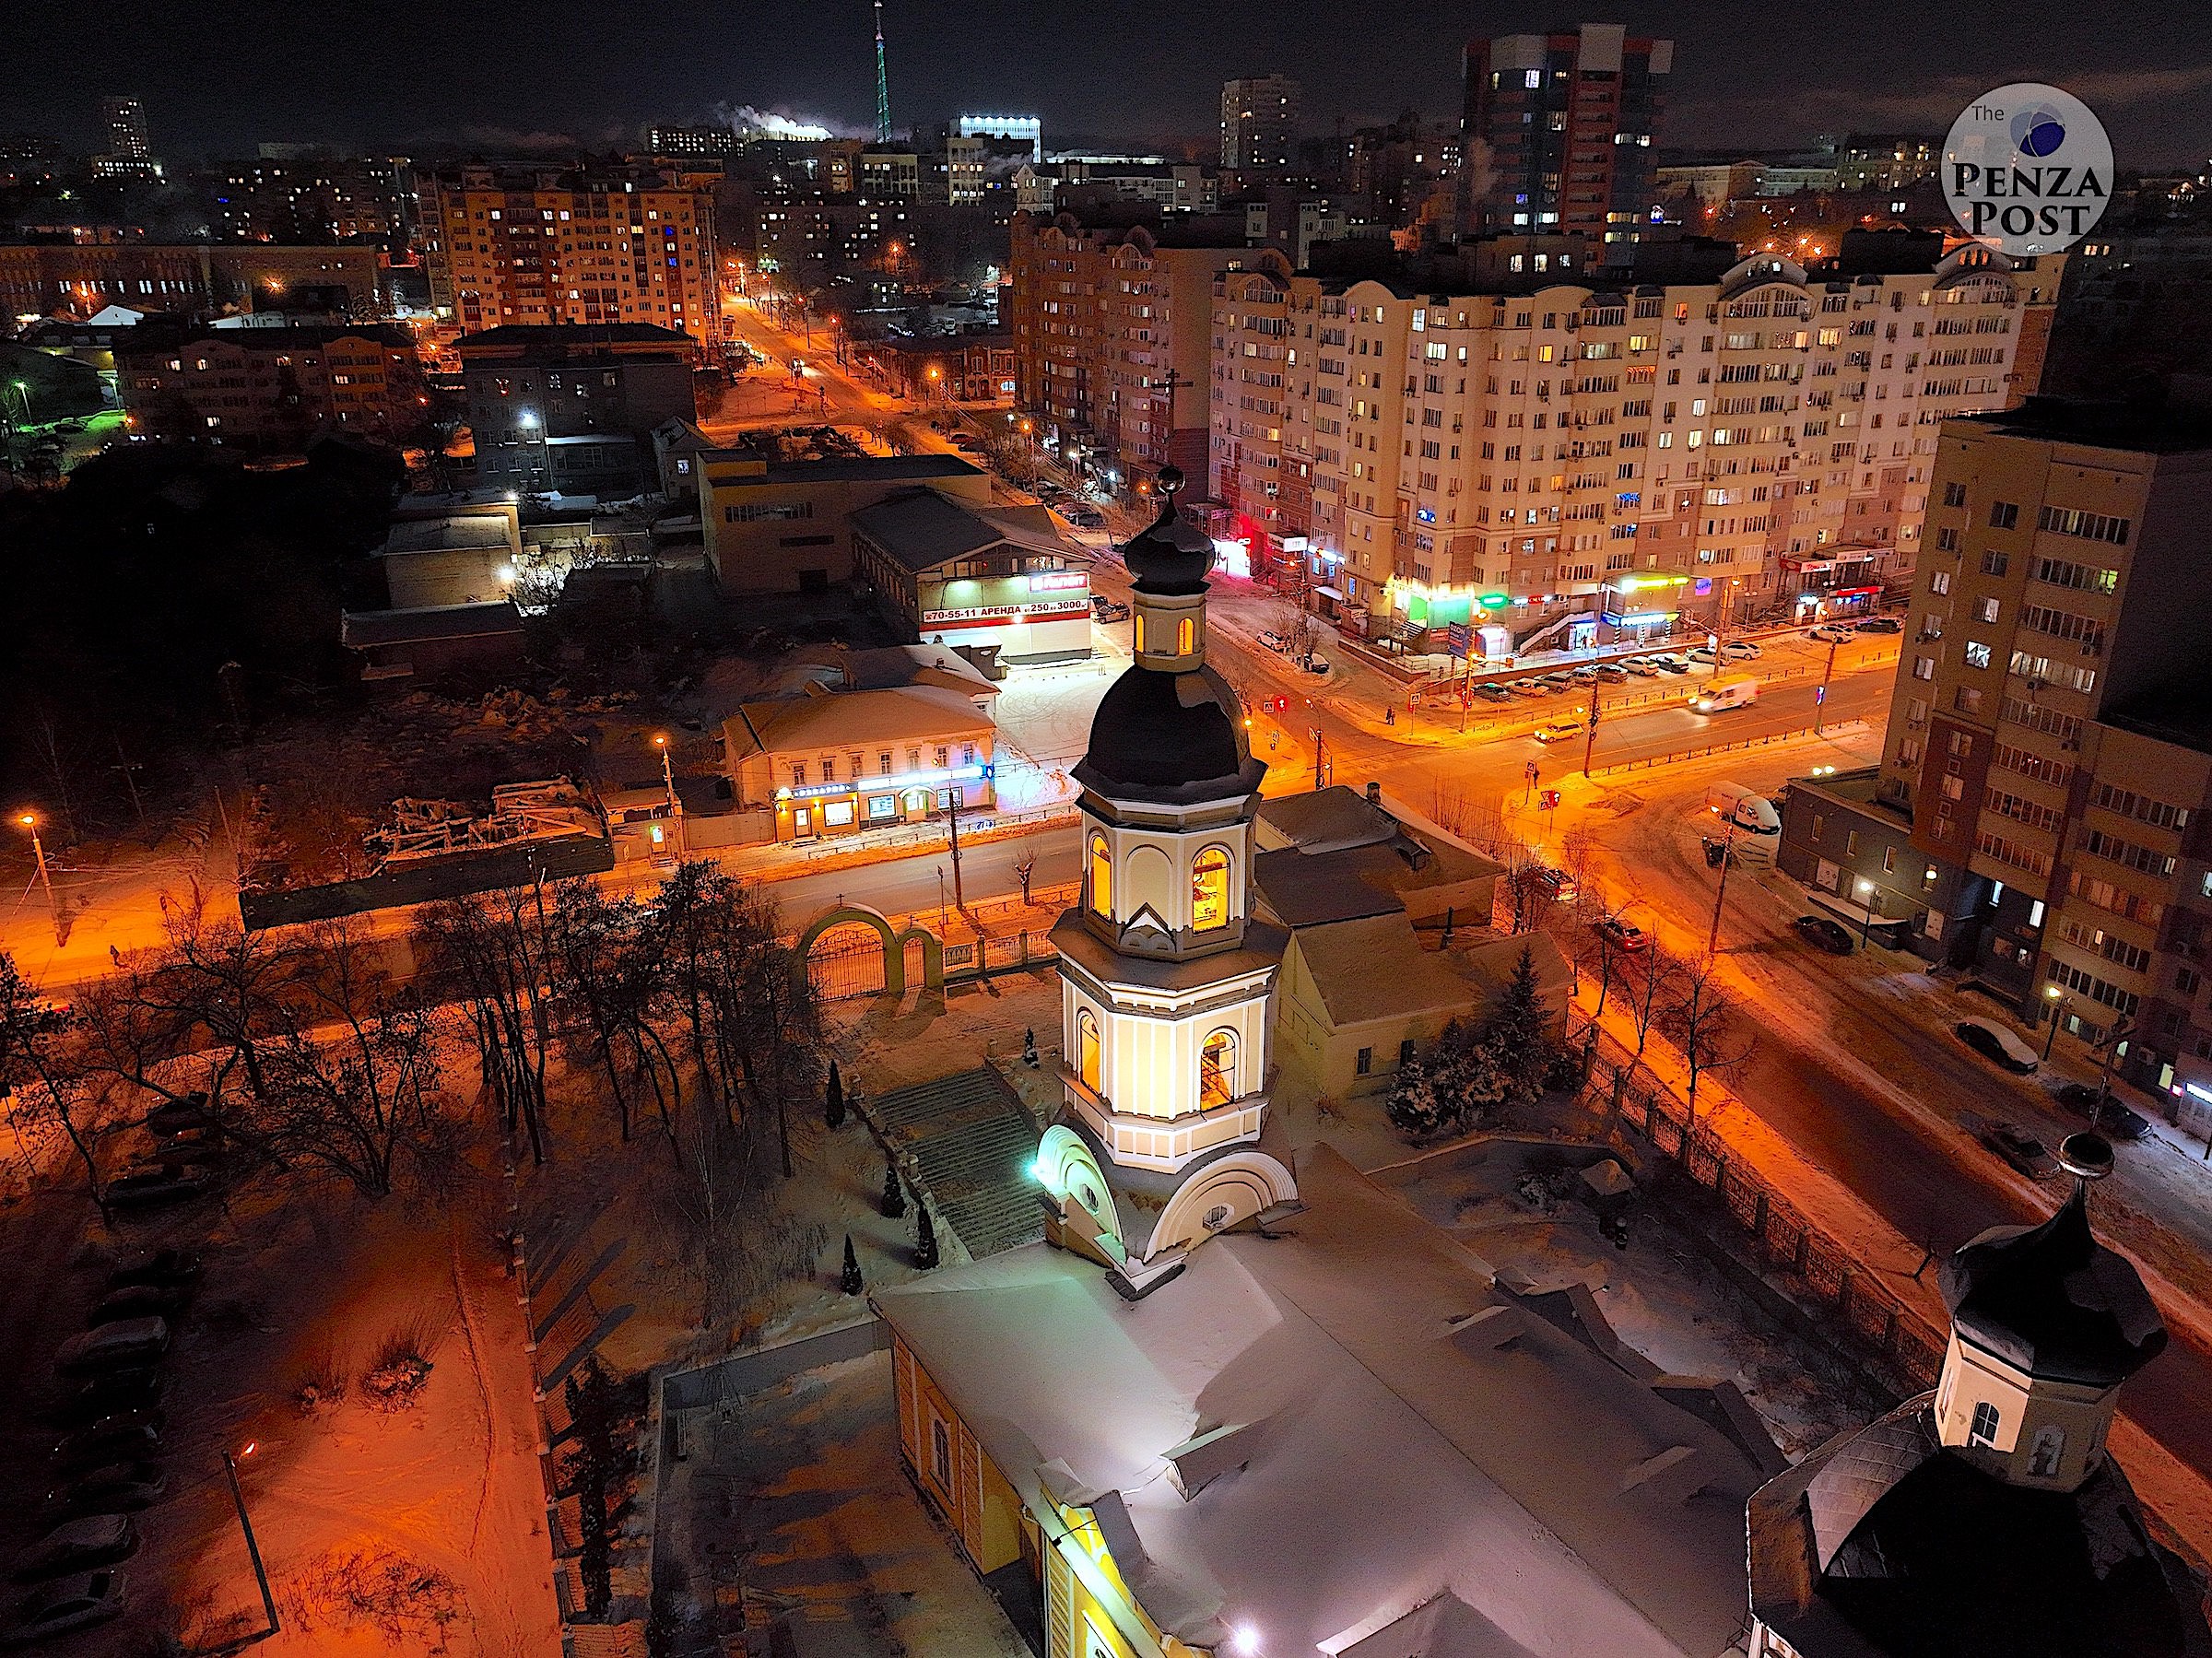 Прогулки по ночной Пензе перед Рождеством. Покровский архиерейский собор - аэрофотография от The Penza Post